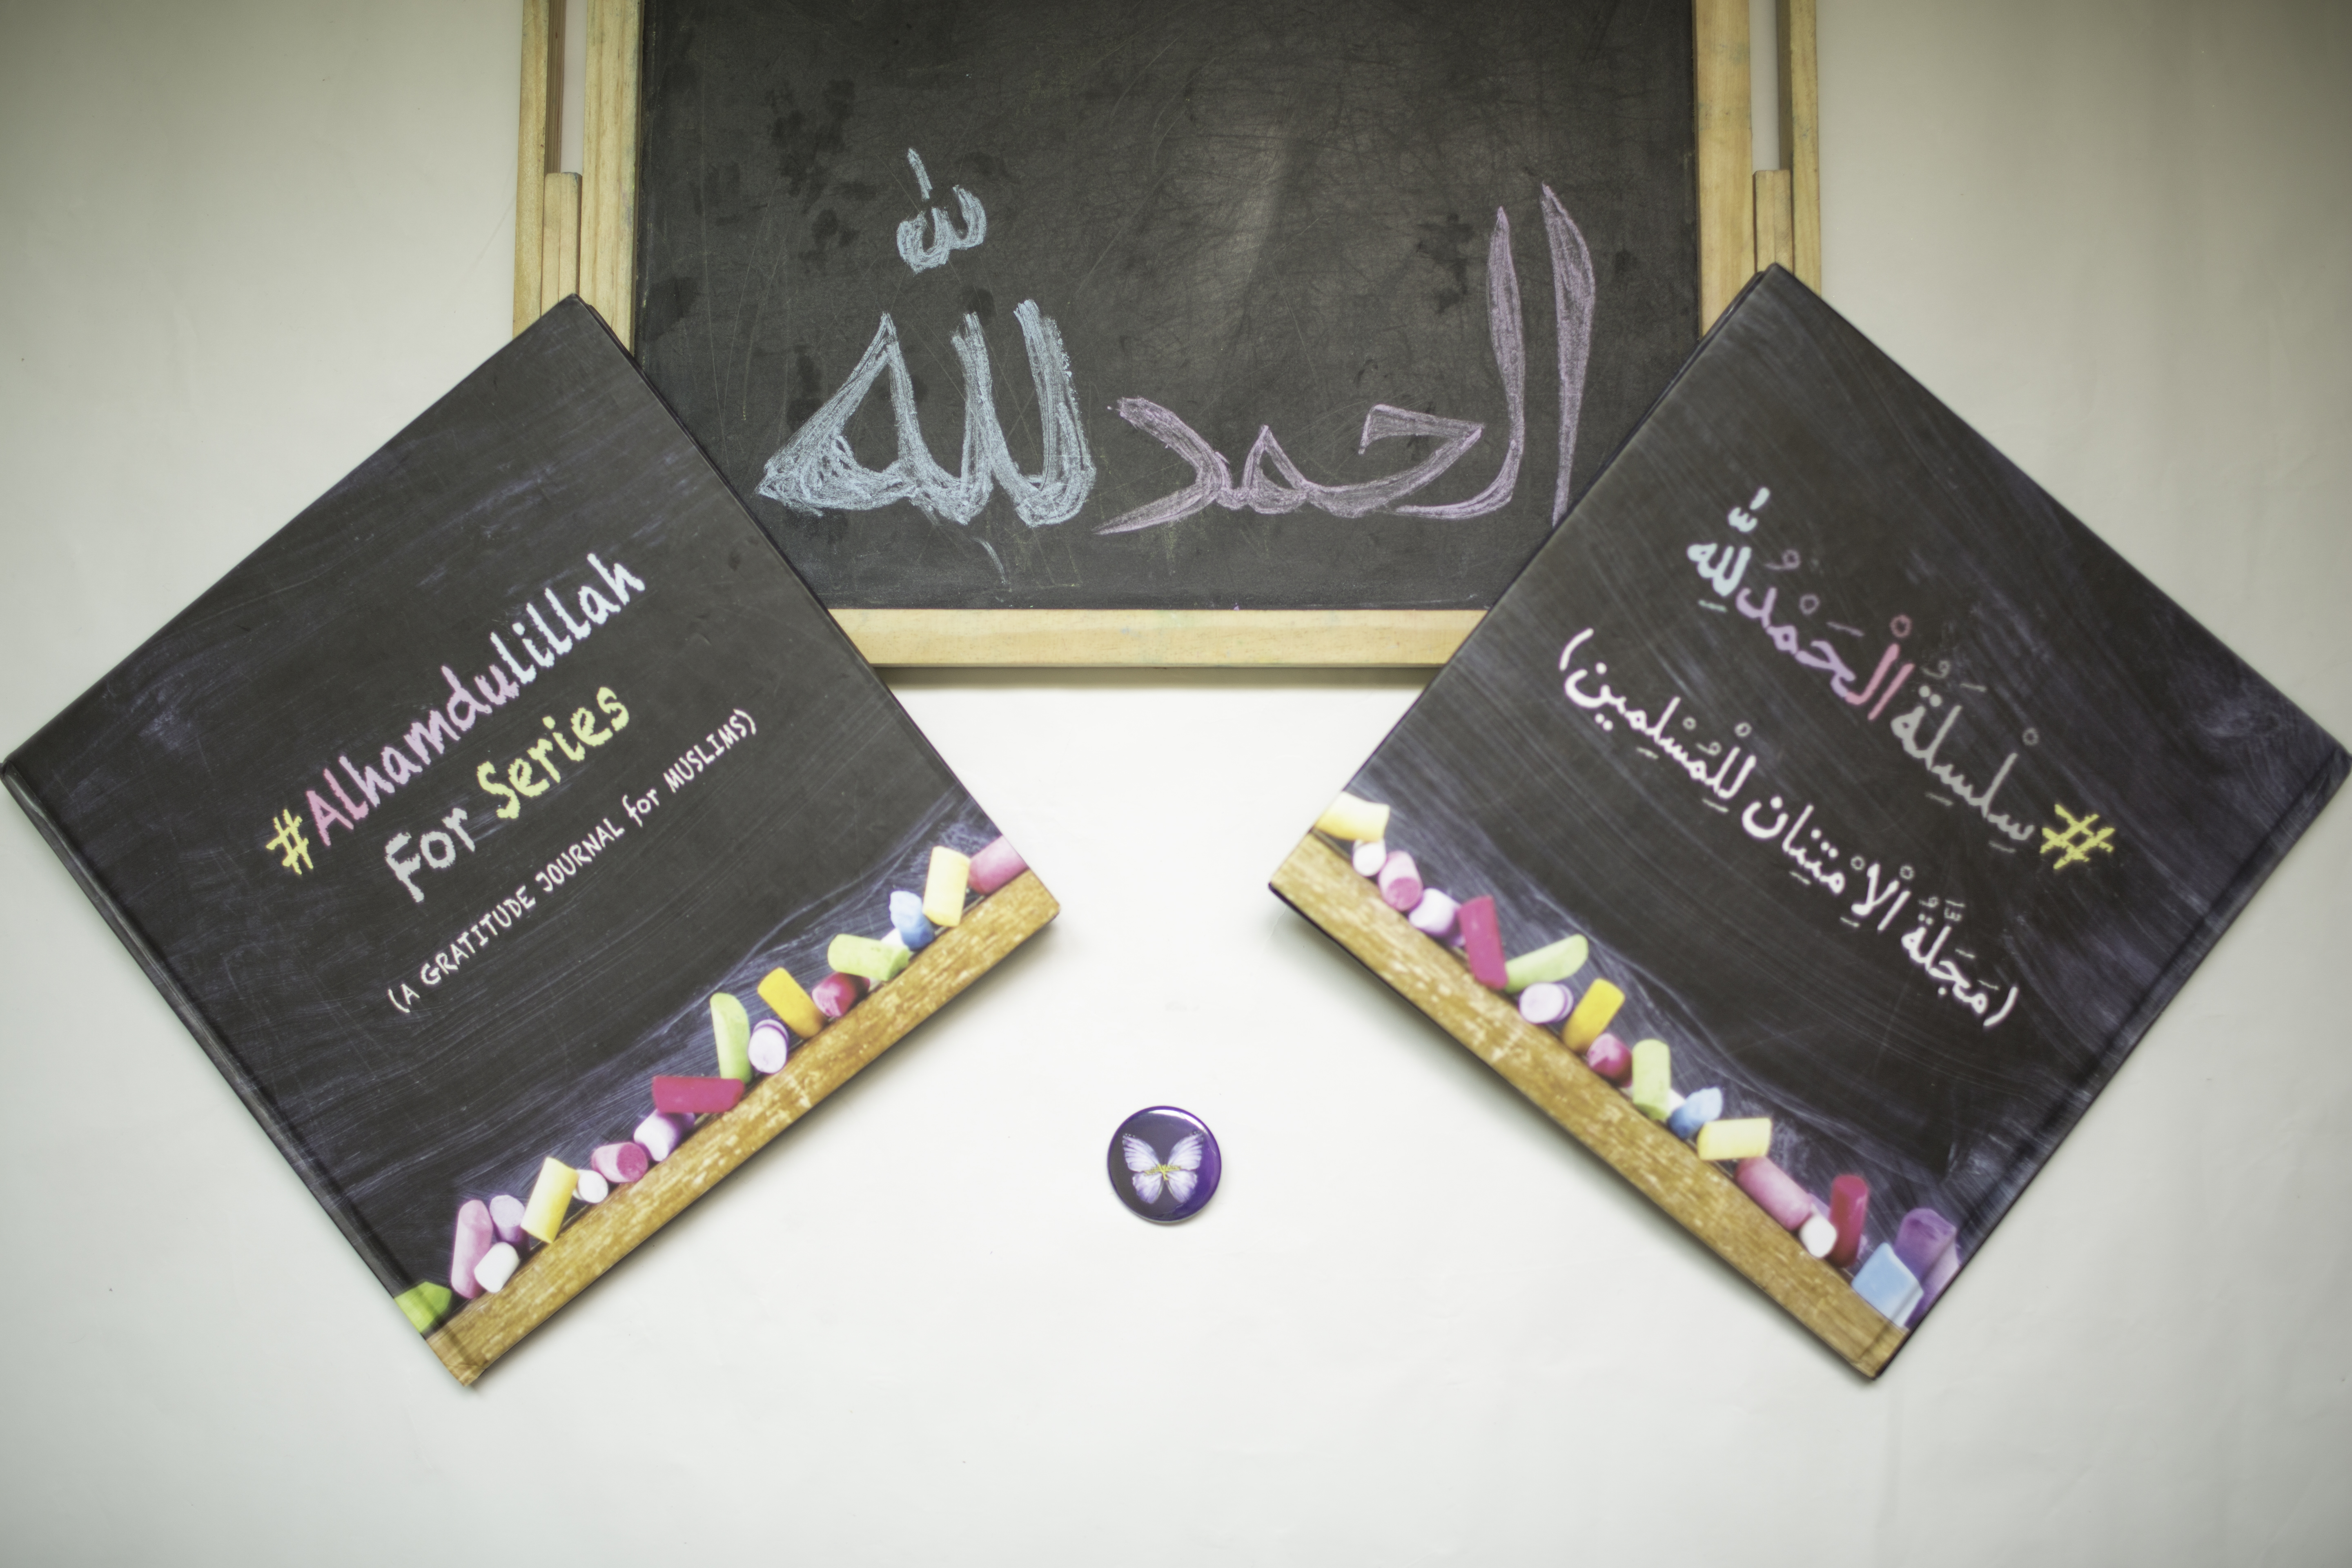 gratitude journal for muslims